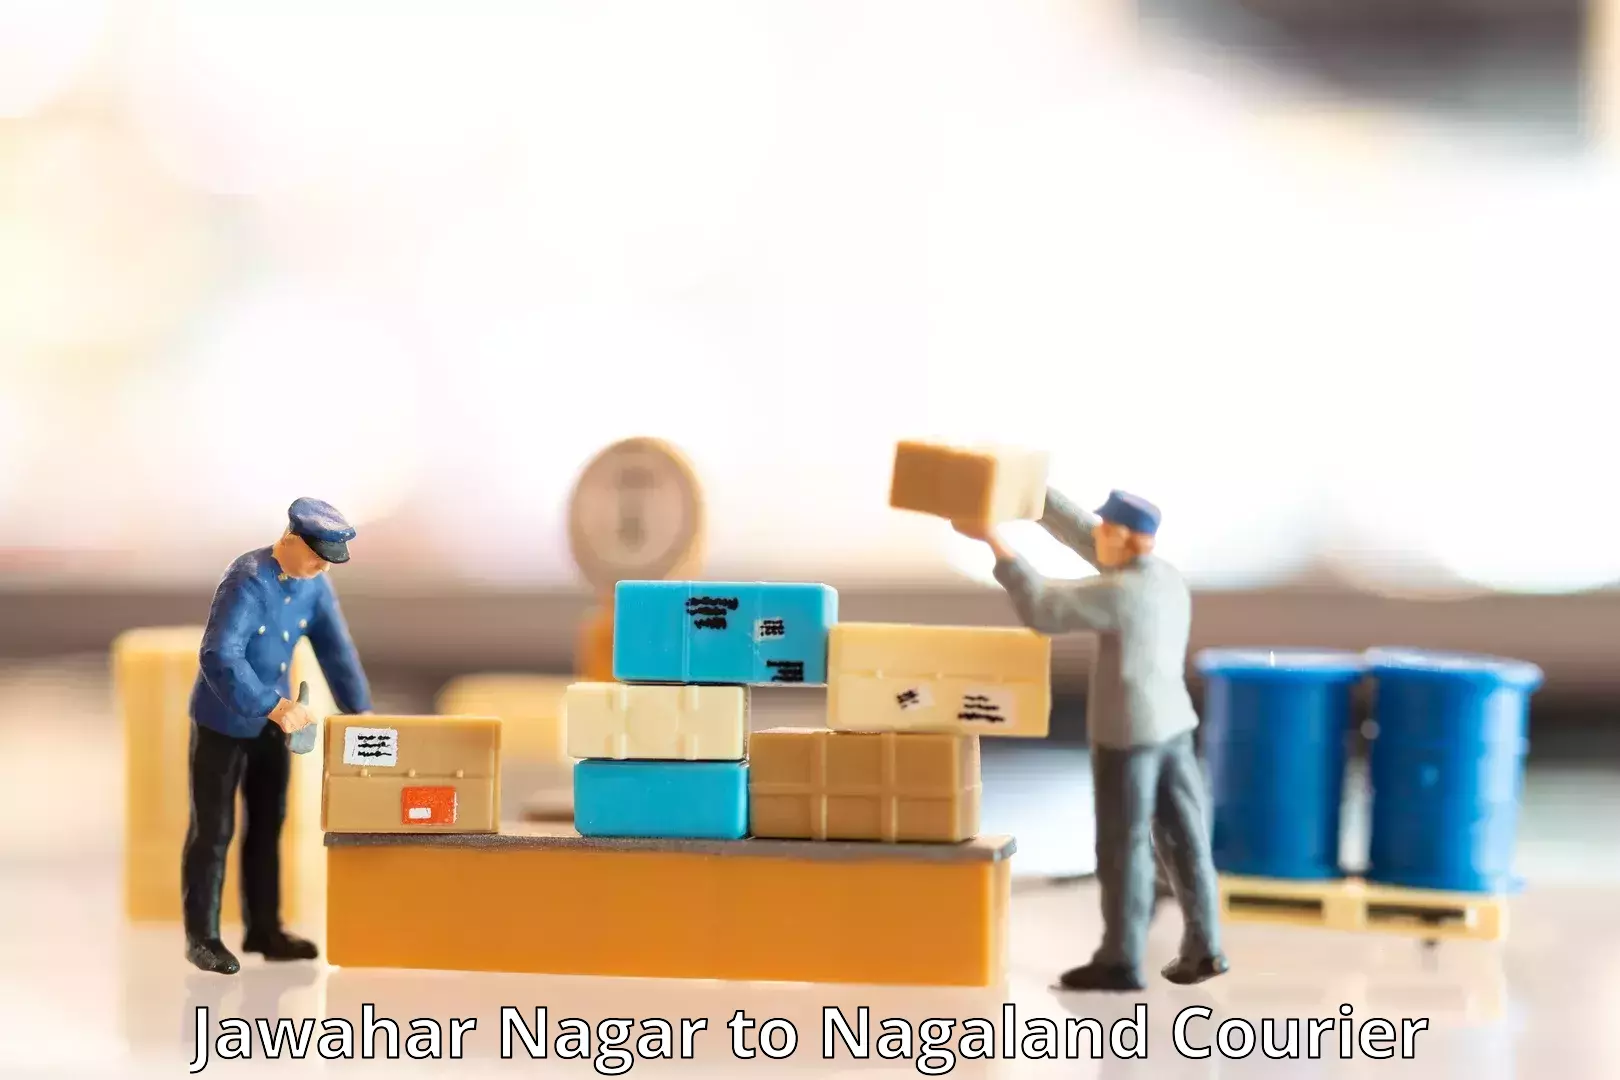 Same-day delivery solutions Jawahar Nagar to Nagaland